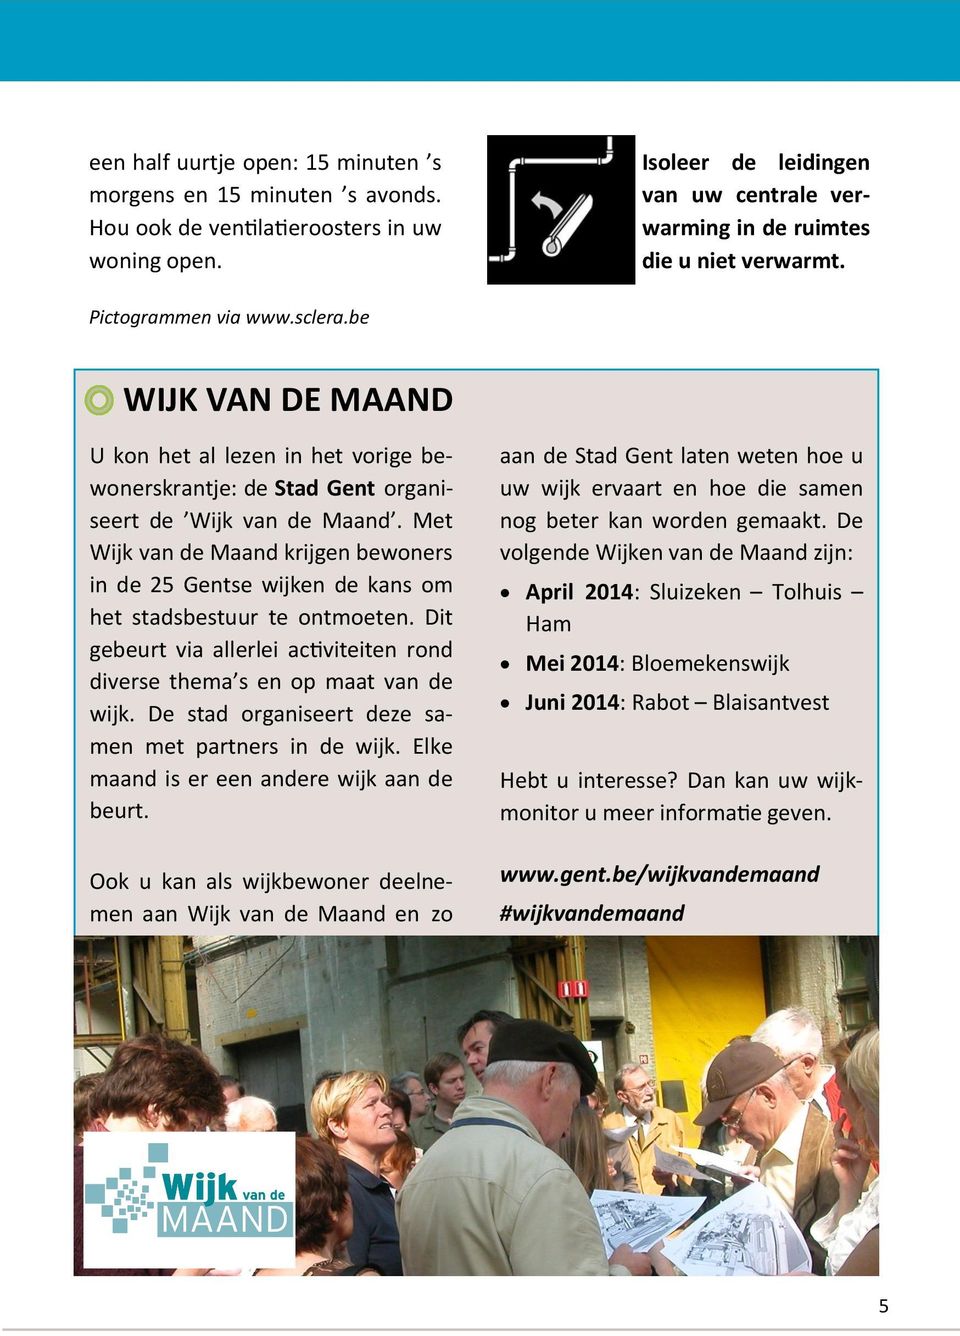 Met Wijk van de Maand krijgen bewoners in de 25 Gentse wijken de kans om het stadsbestuur te ontmoeten. Dit gebeurt via allerlei activiteiten rond diverse thema s en op maat van de wijk.